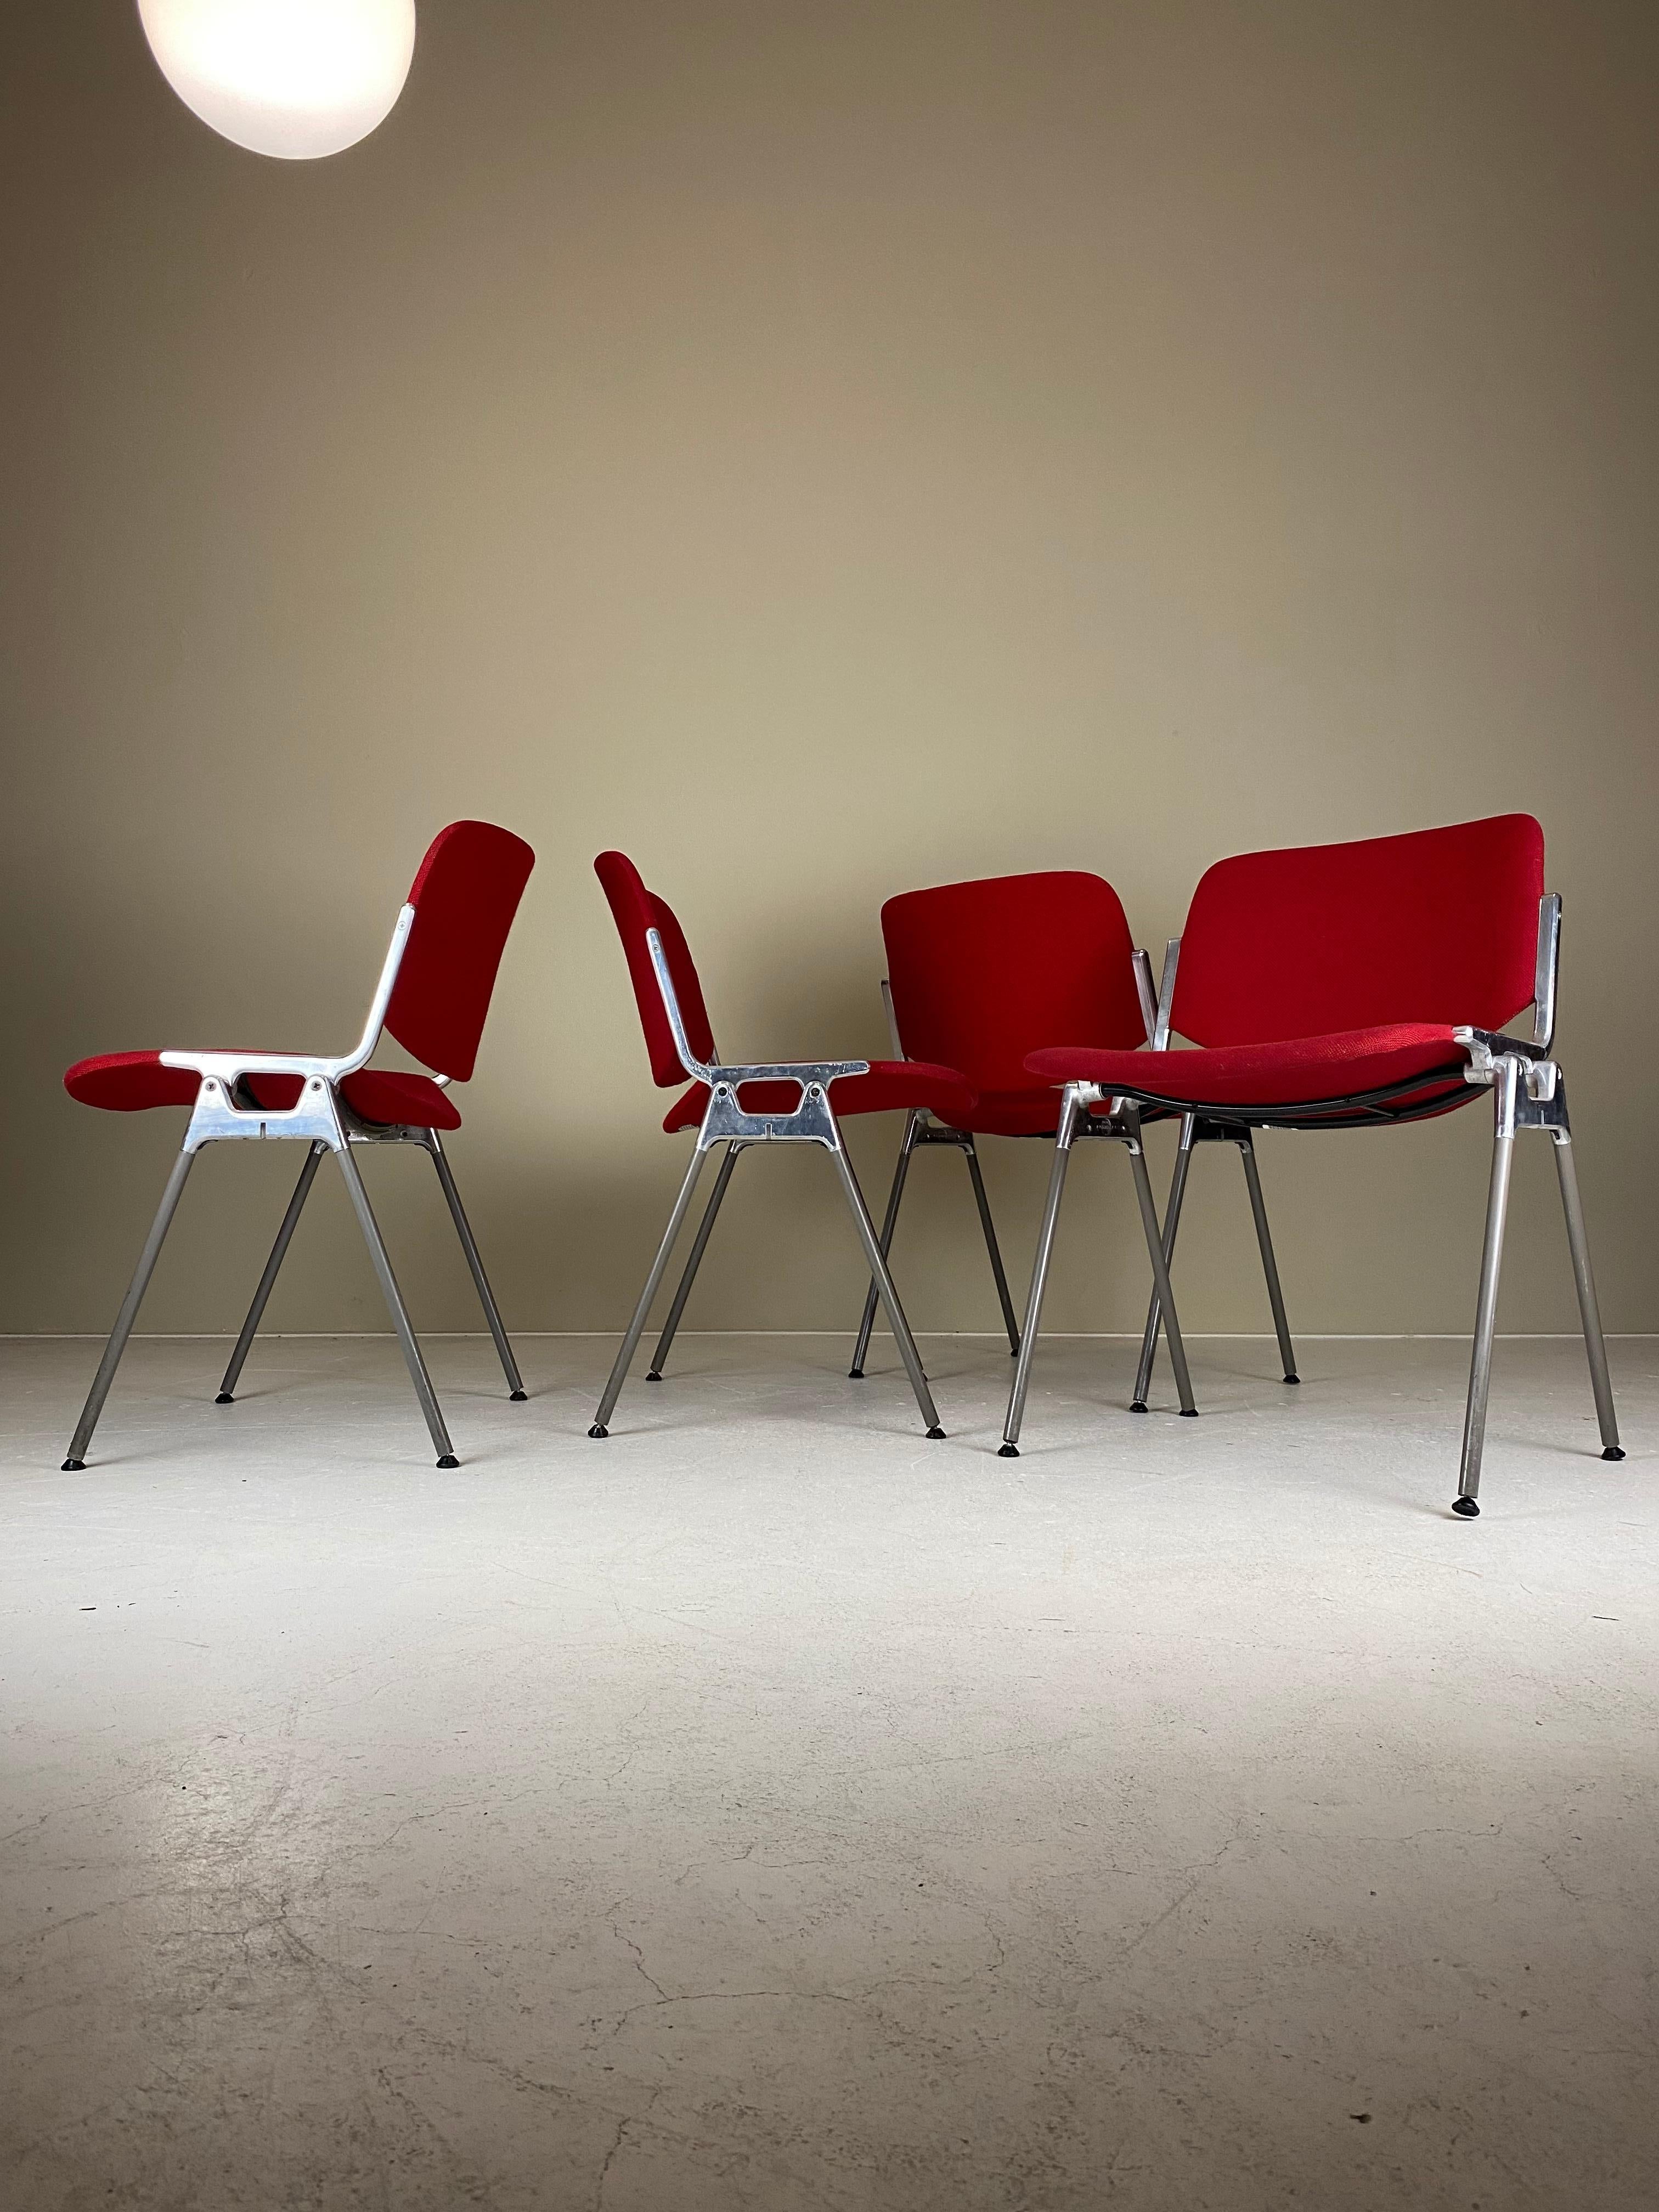 Conçue en 1965 par Giancarlo Piretti, la chaise empilable DSC-106 est l'une des chaises les plus célèbres jamais fabriquées par Castelli. Il fait désormais partie intégrante de l'histoire du design et figure dans de nombreuses collections de musées